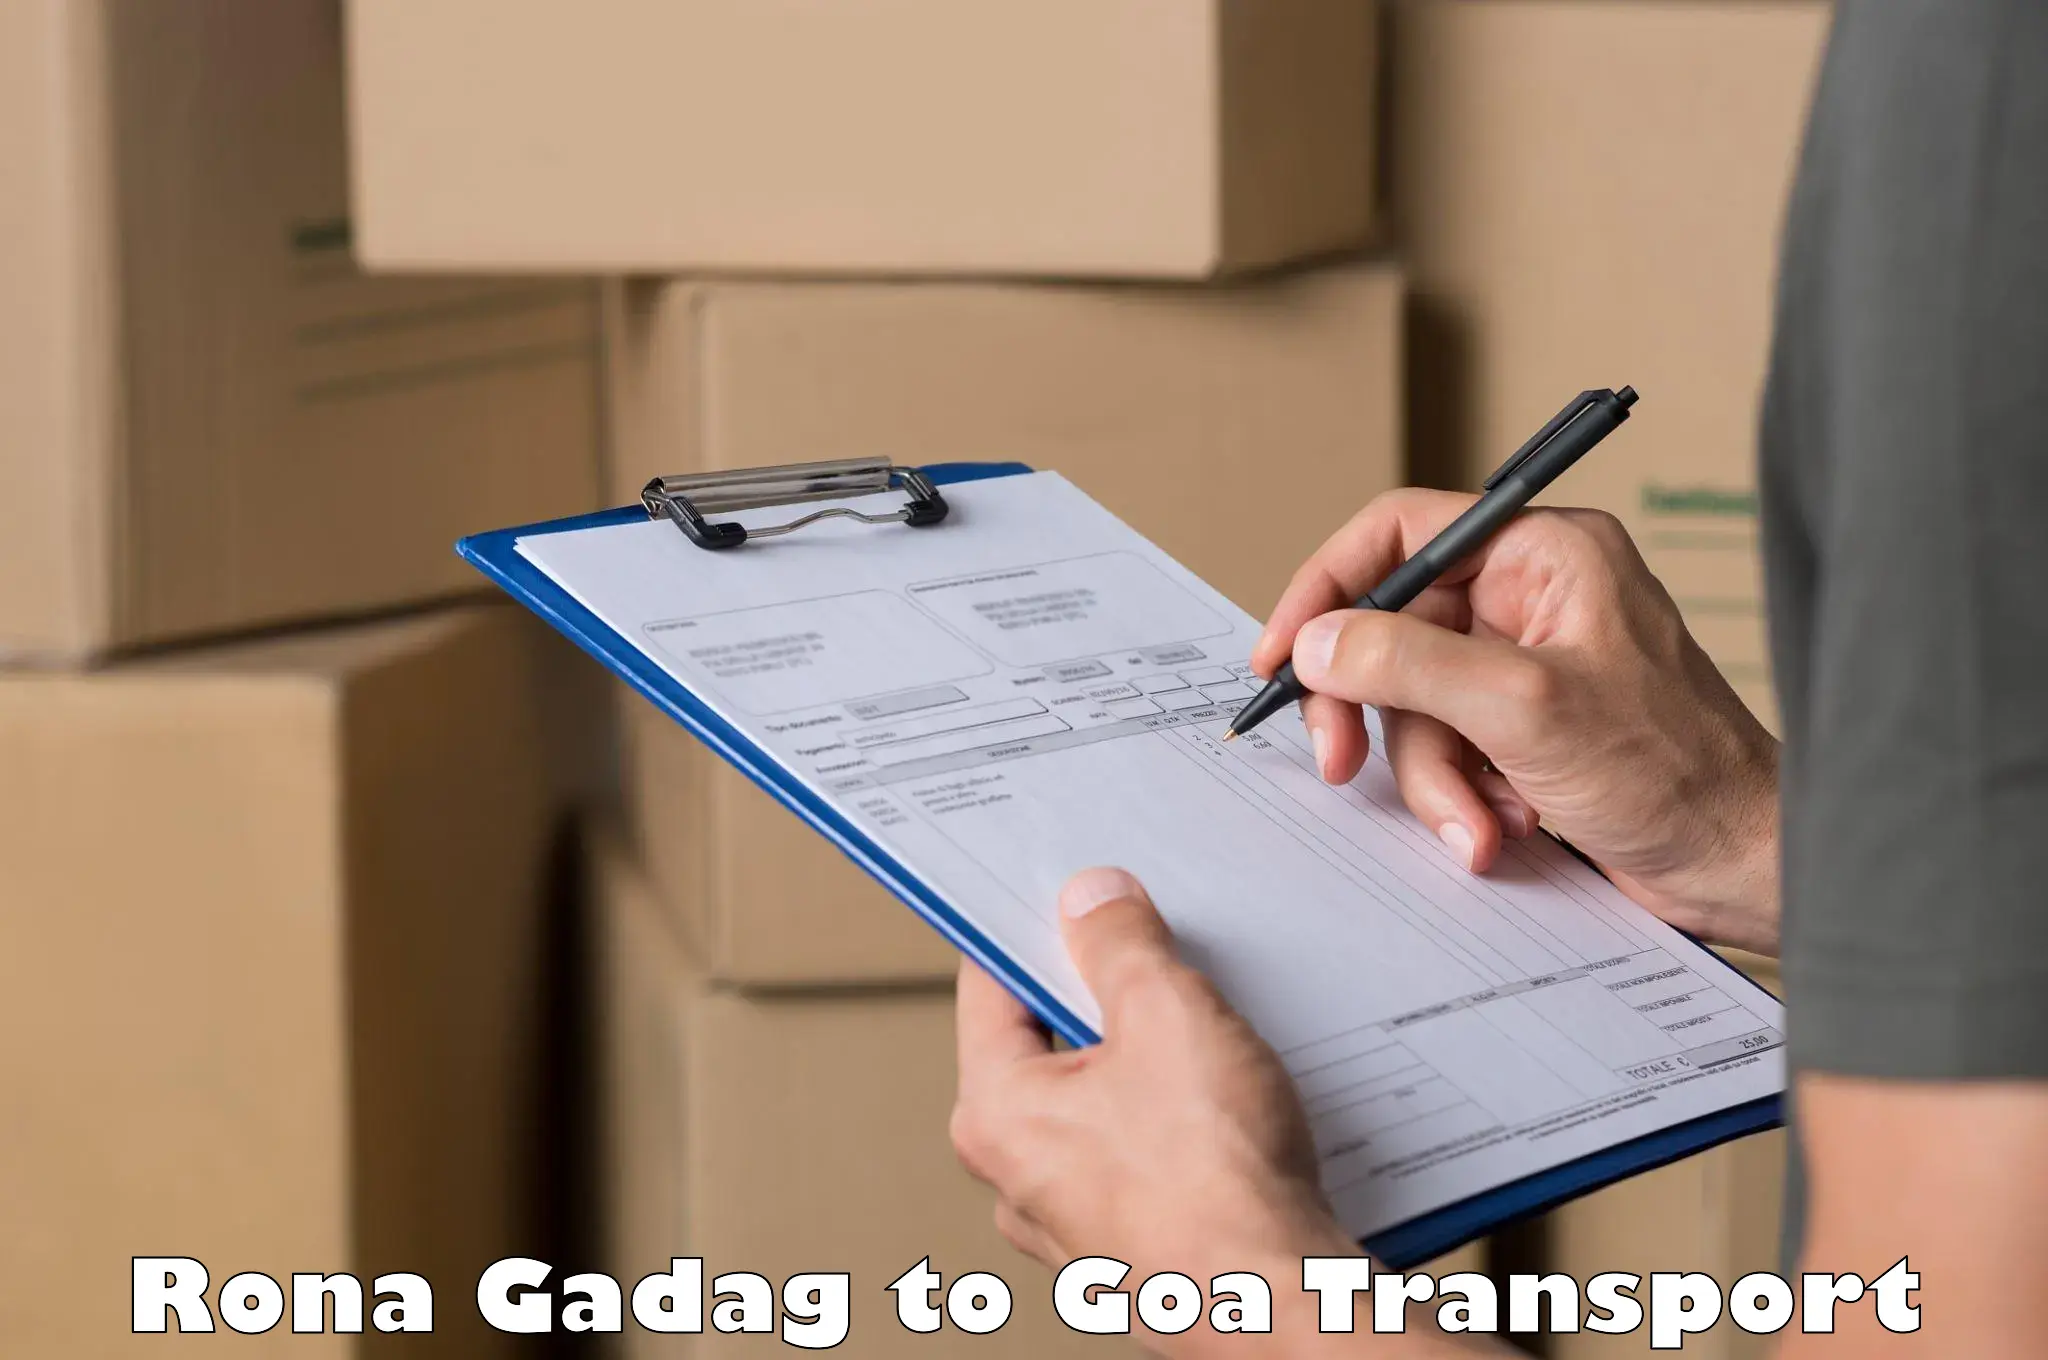 Transport in sharing Rona Gadag to Vasco da Gama